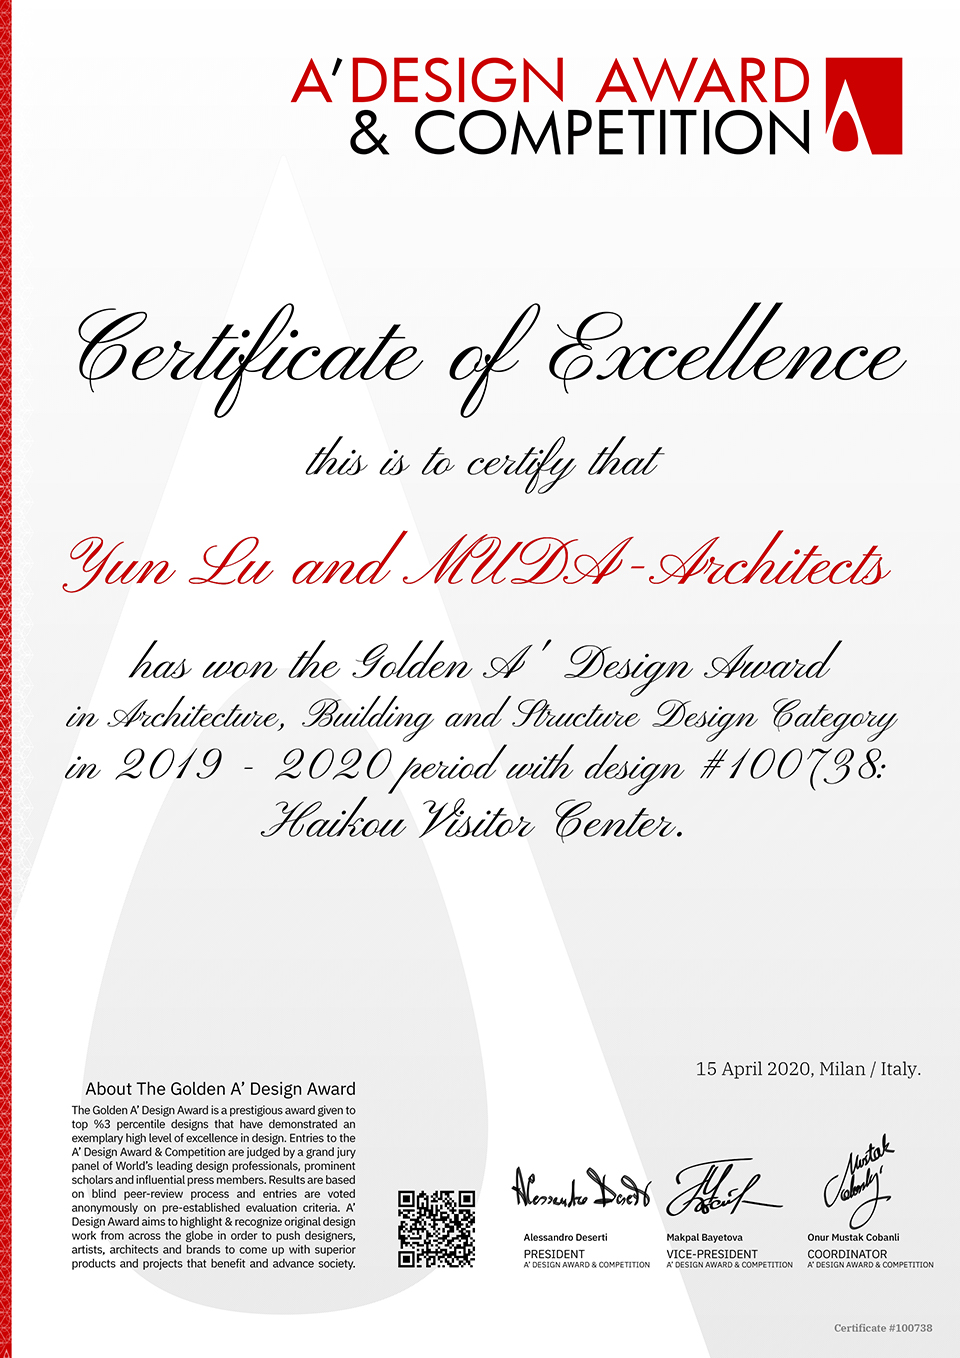 MUDA won the 2019-2020 A'Design Award